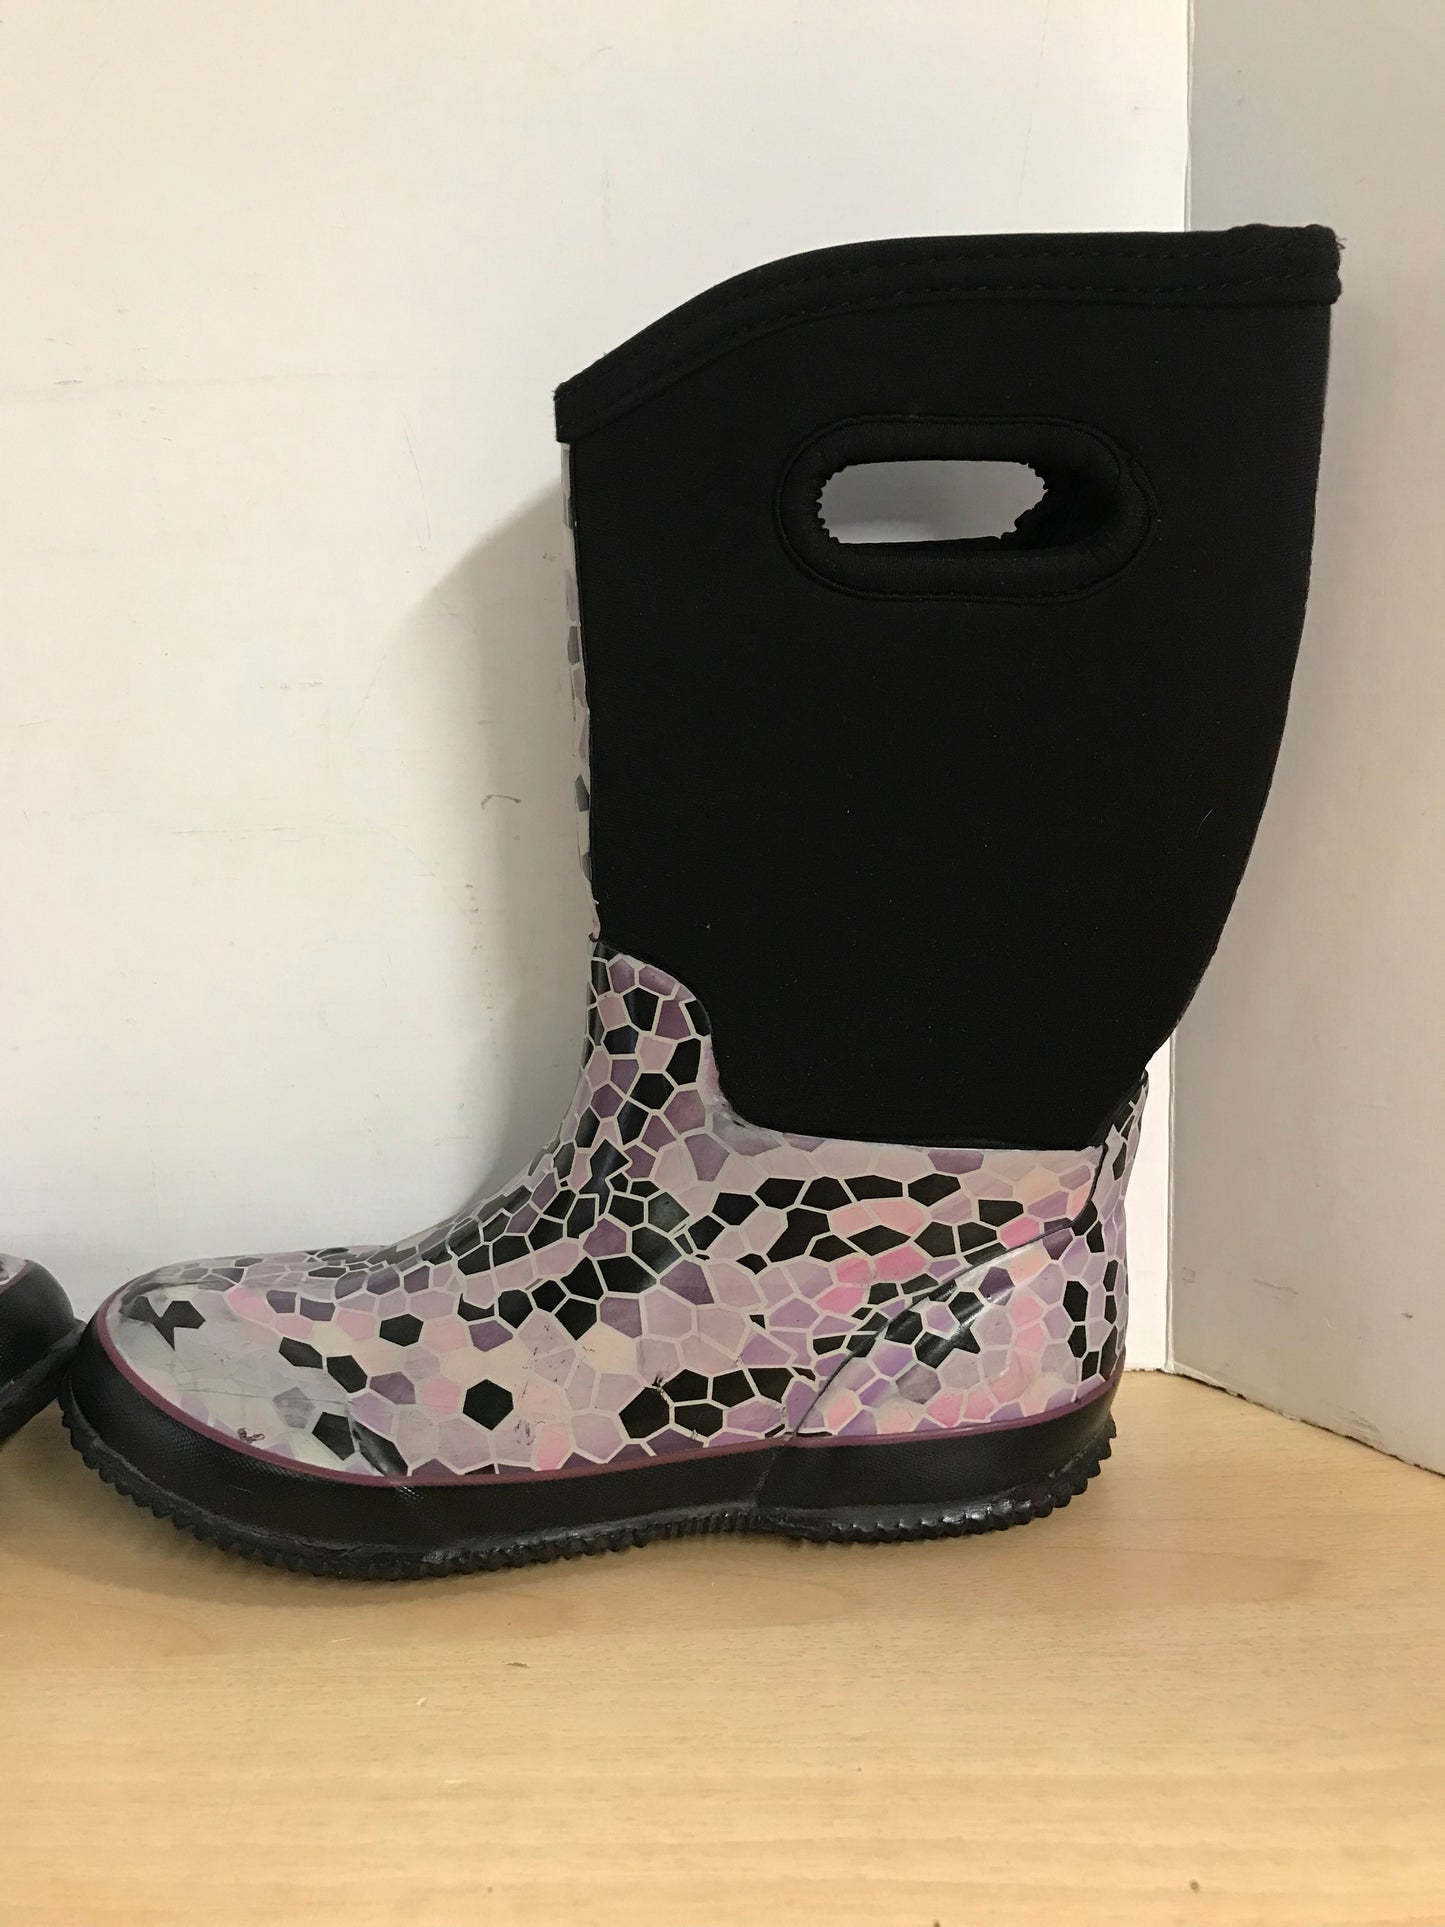 Bogs Style Ladies Size 7 Neoprene Rubber Rain Winter Boots Black Purple